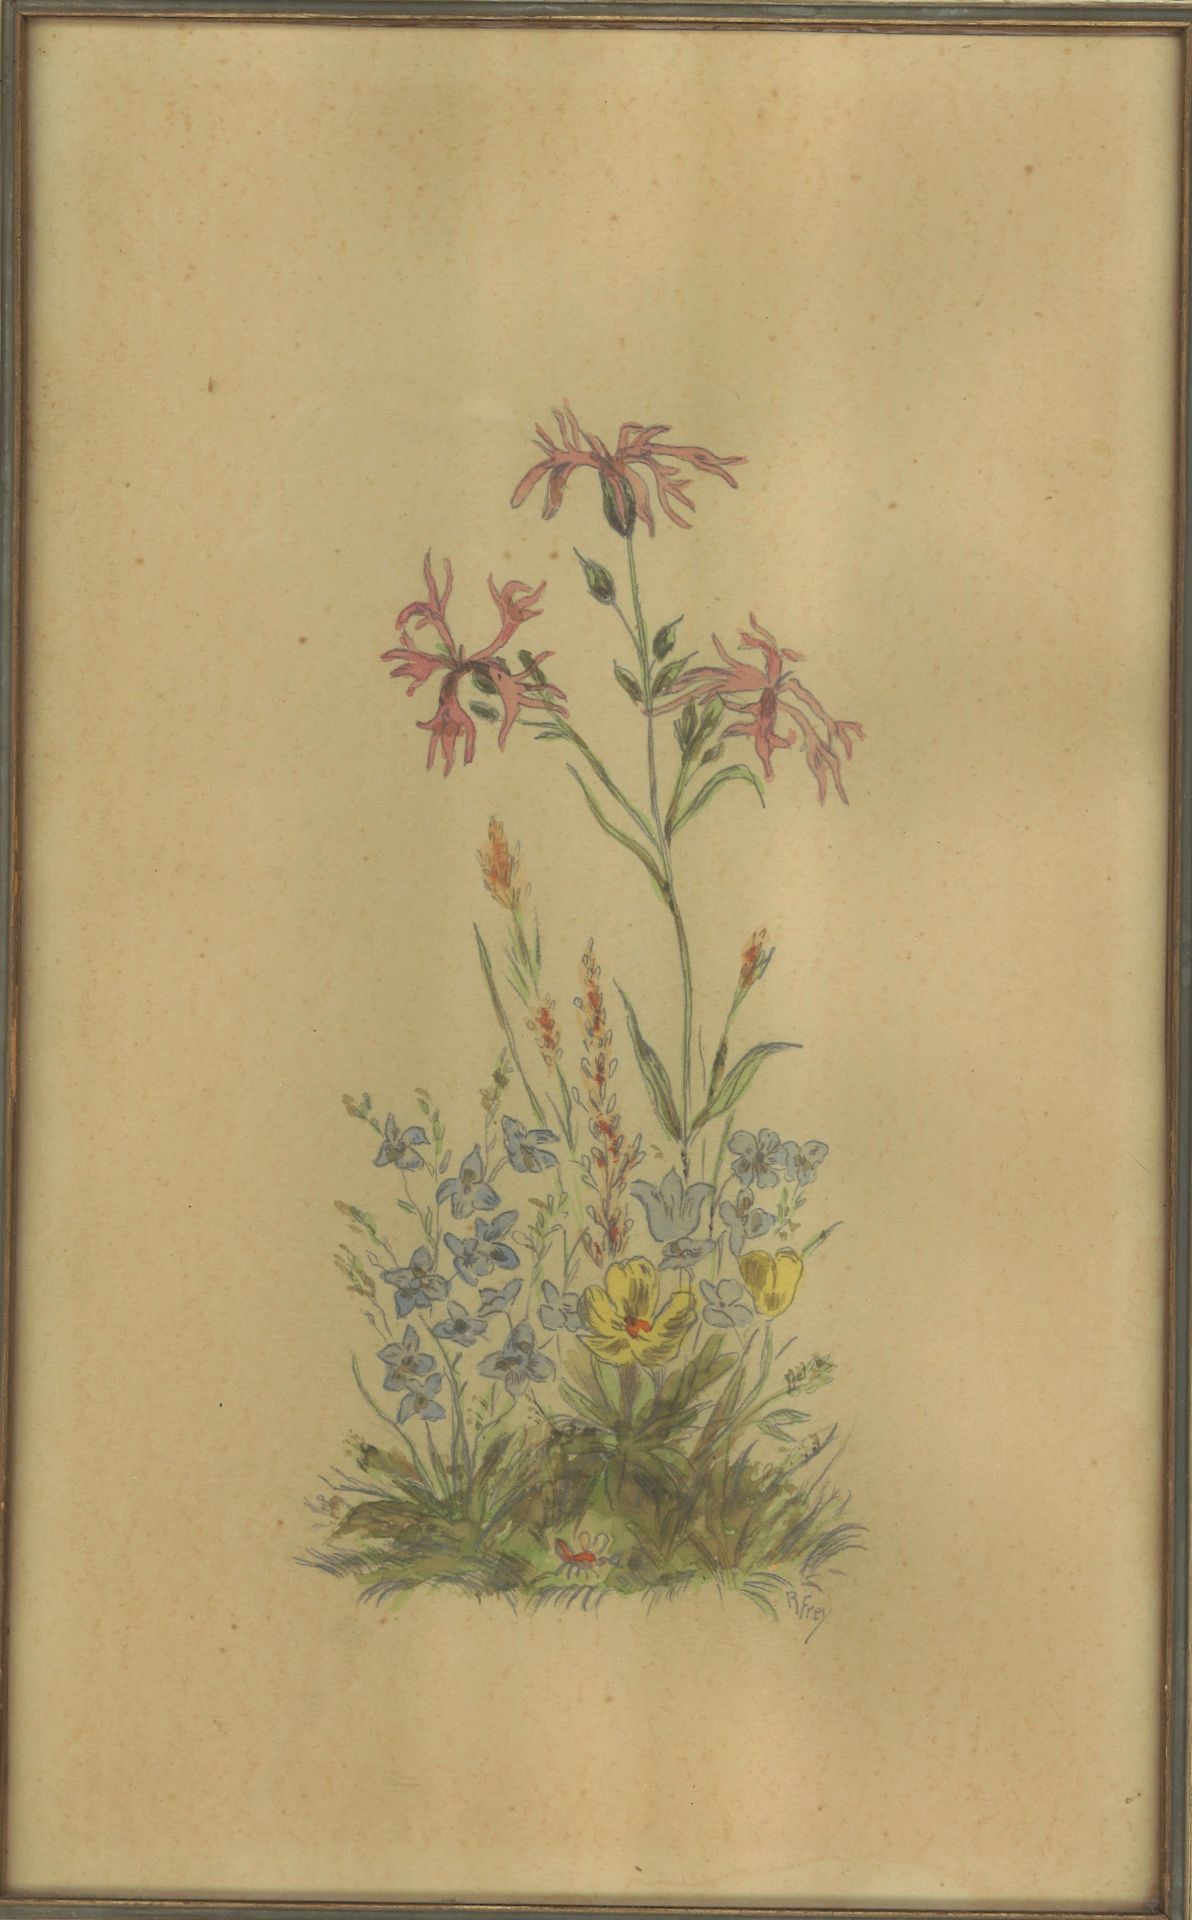 R. Frey Aquarell auf Papier "Blumenstudie" hinter Glas gerahmt. Gesamtmaße: Höhe ca. 33 cm, Breite